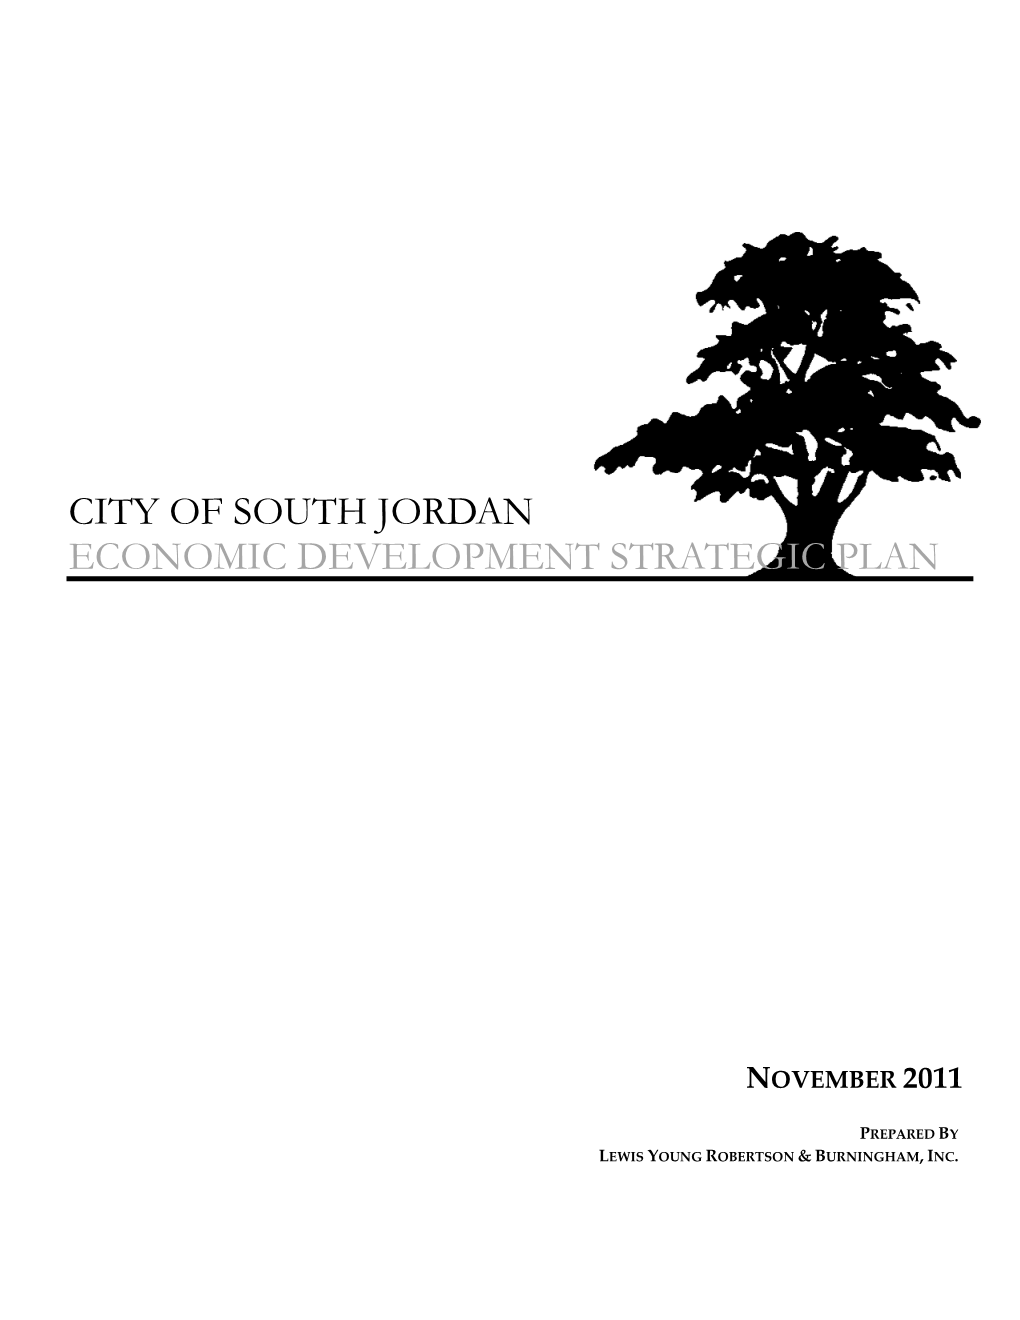 South Jordan Economic Development Strategic Plan